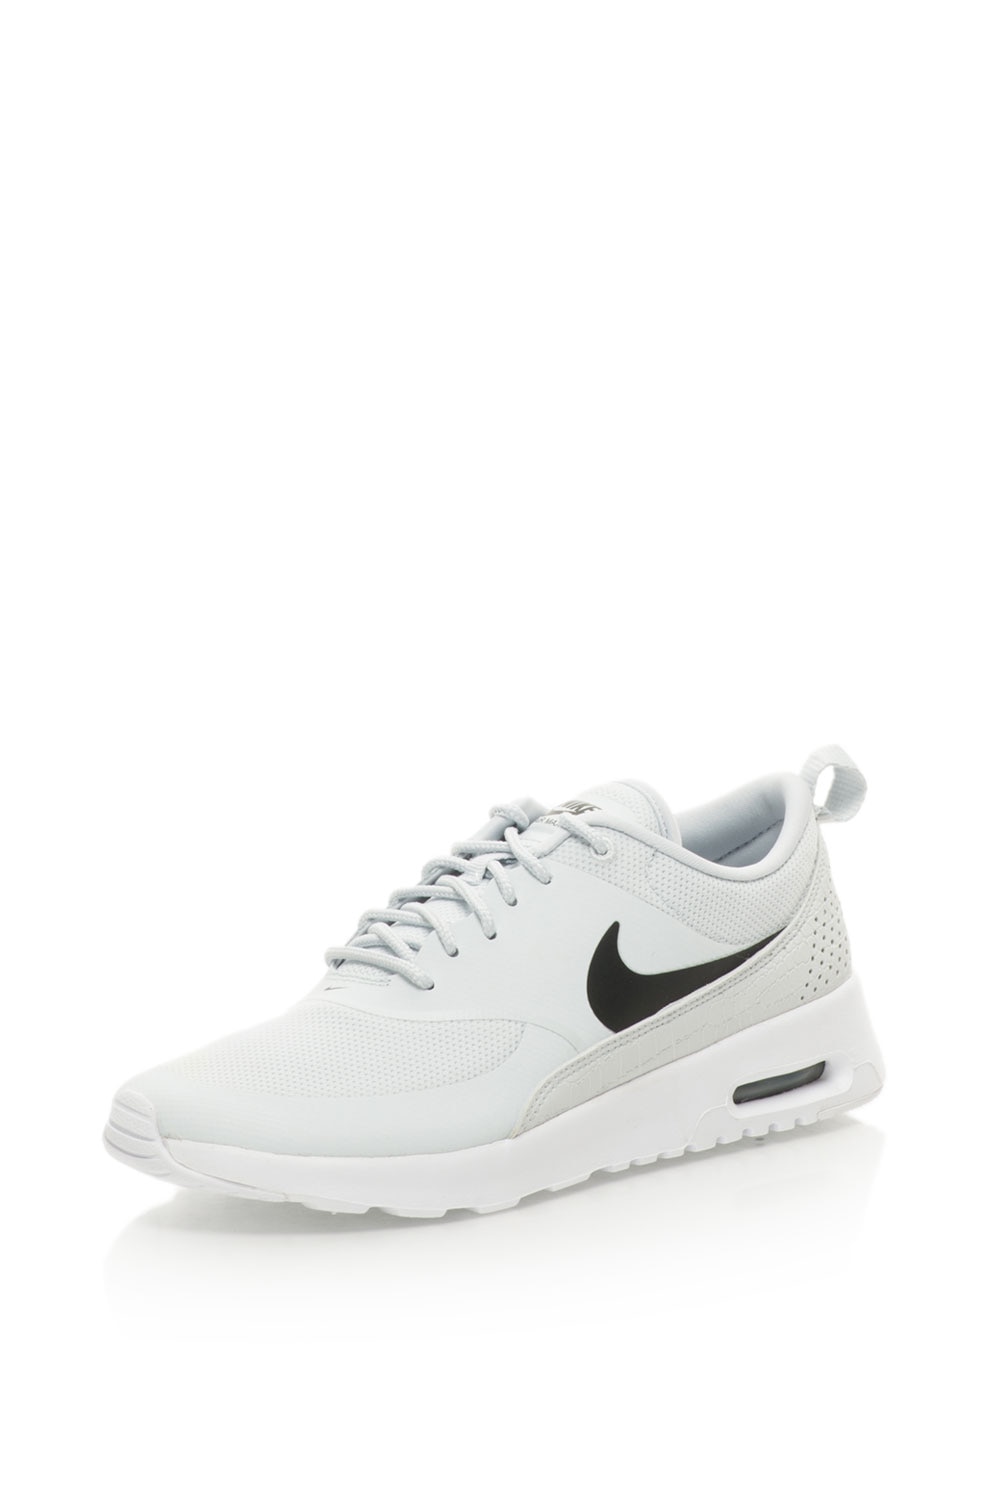 Nike, Air Max Thea Sneakers Cipő 